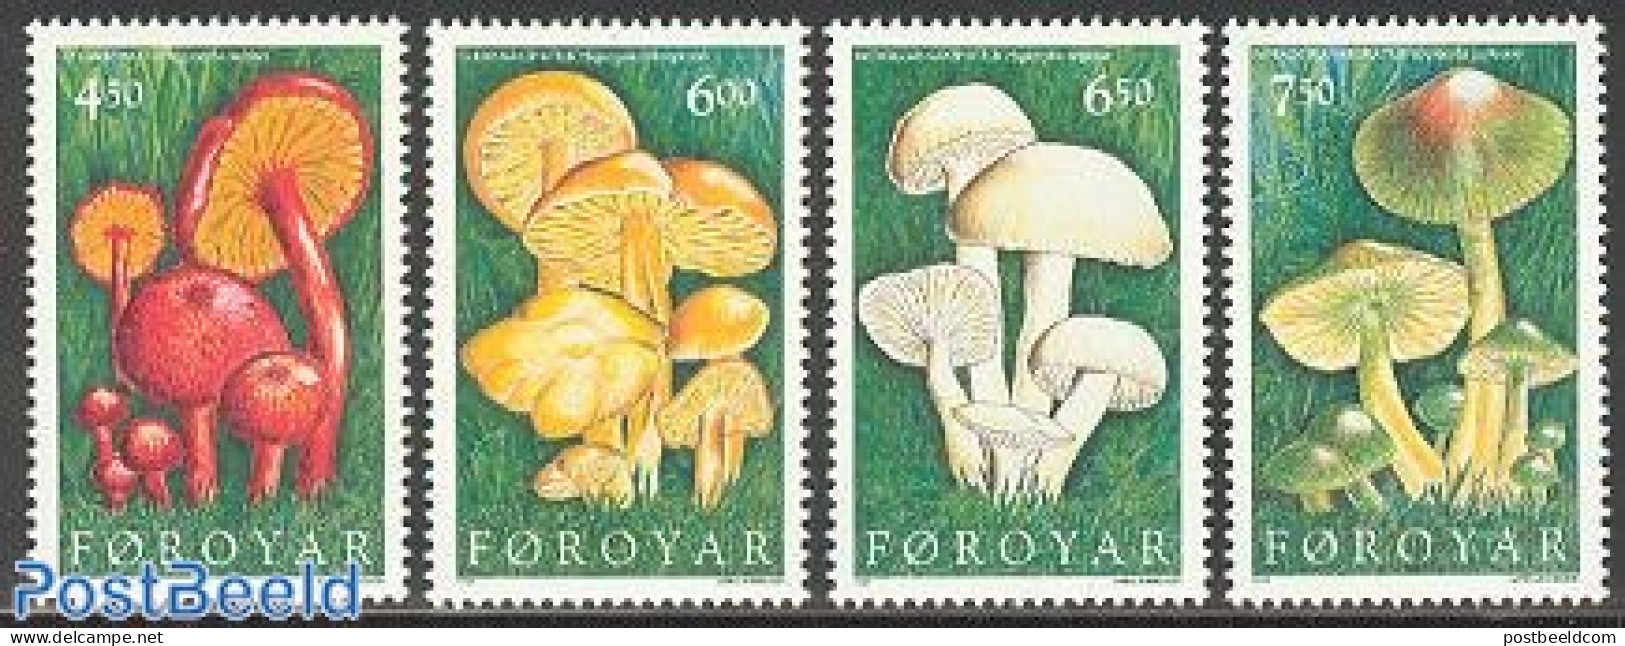 Faroe Islands 1997 Mushrooms 4v, Mint NH, Nature - Mushrooms - Pilze